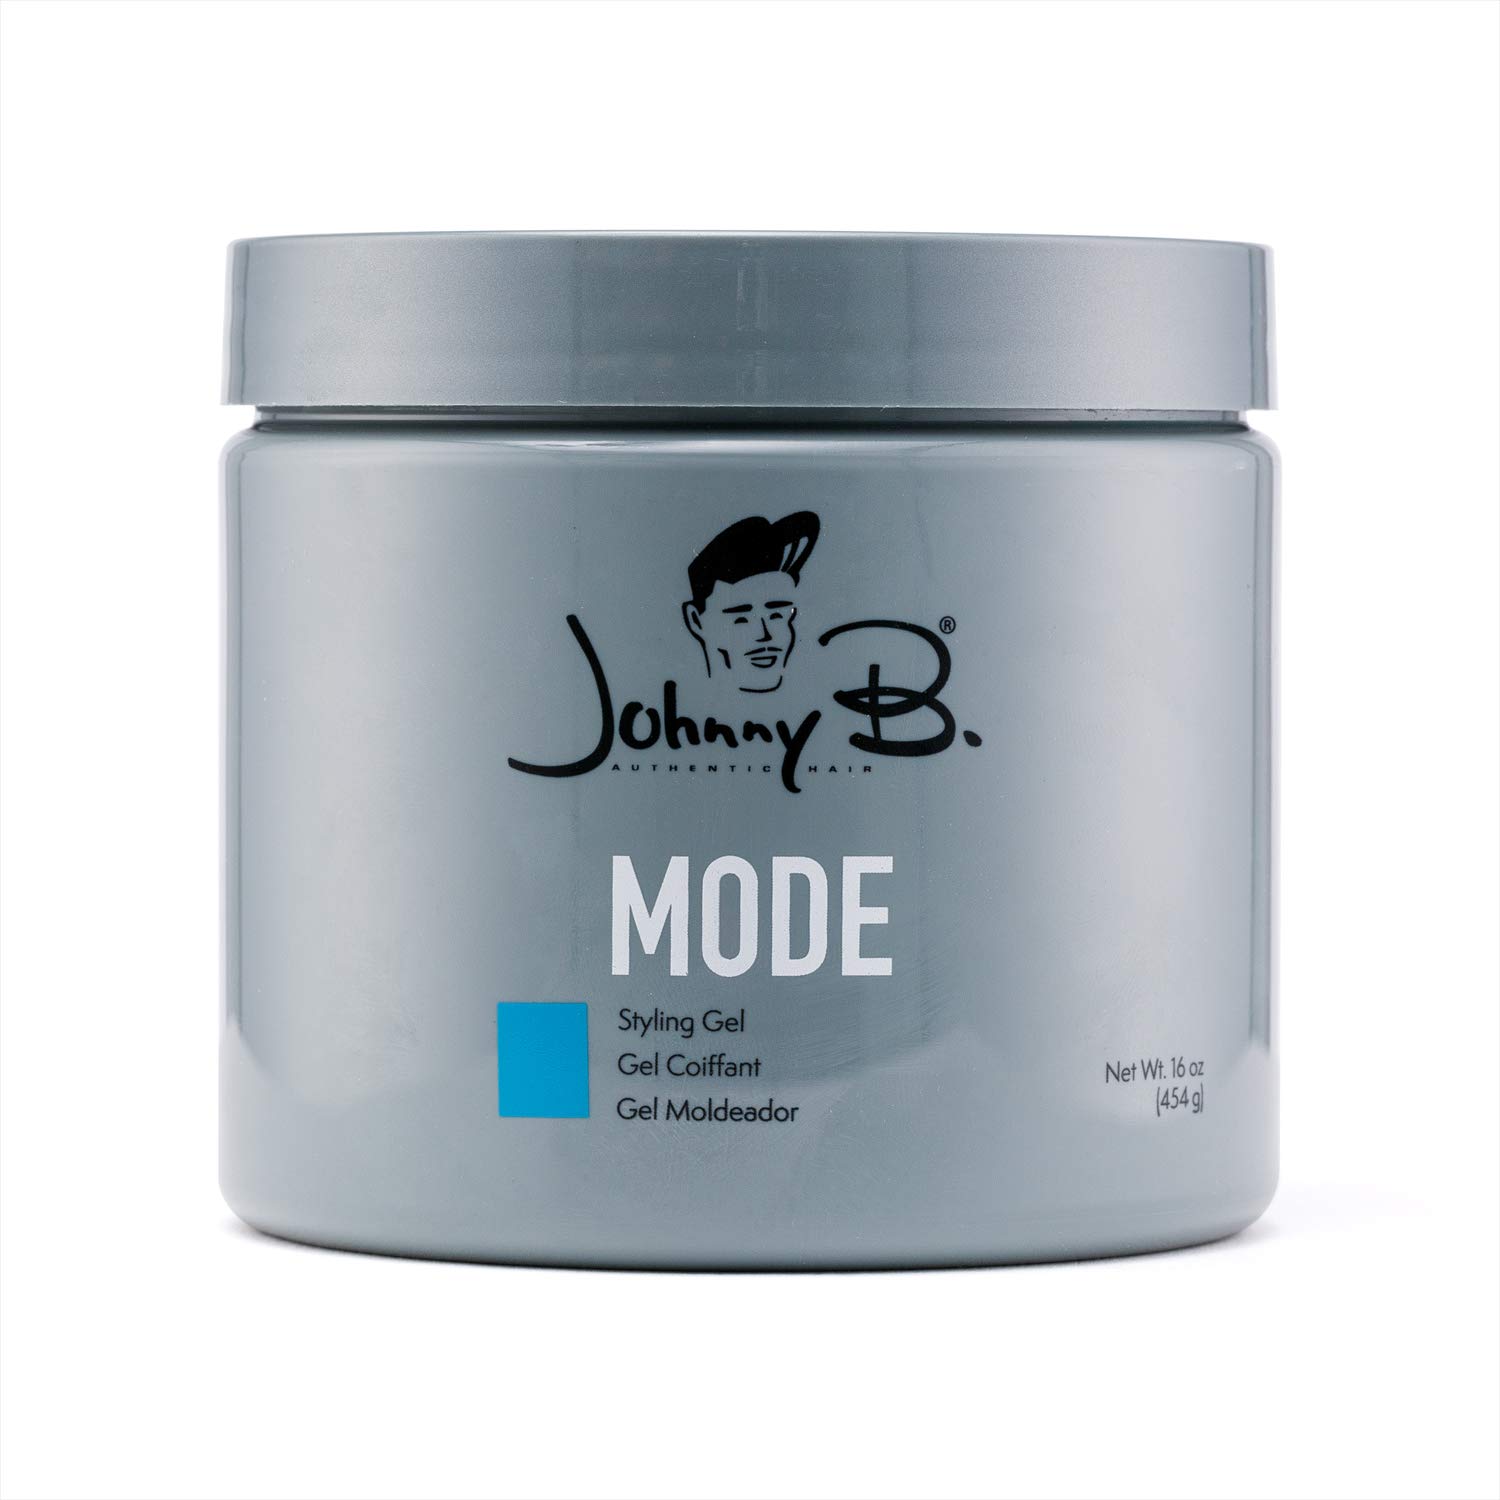 Mua Johnny B Mode Styling Gel trên Amazon Mỹ chính hãng 2023 | Fado